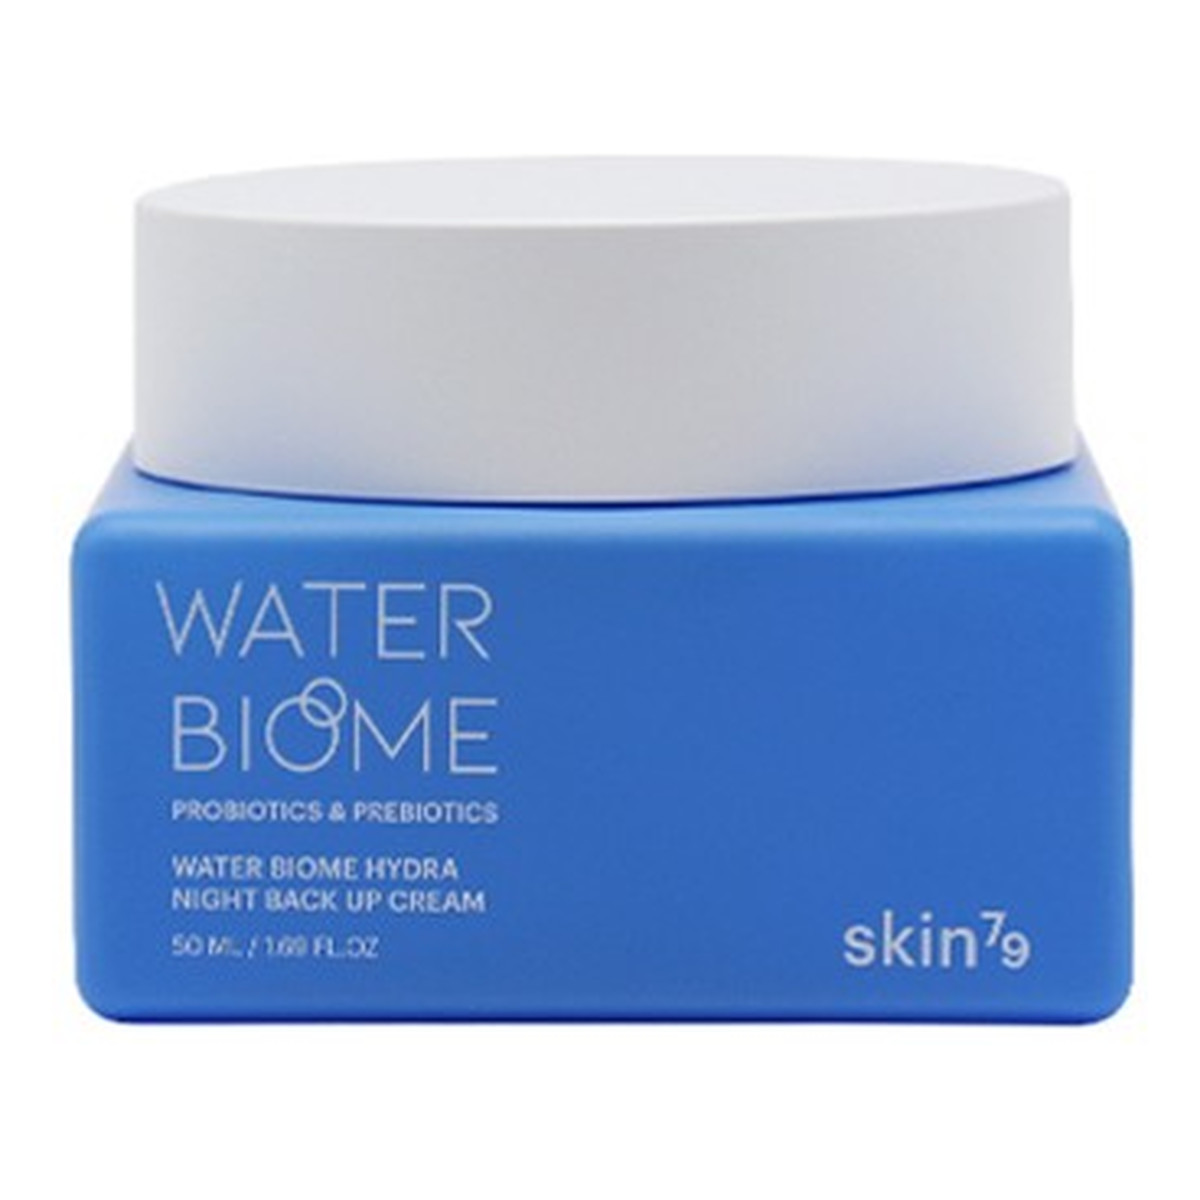 Skin79 Water Biome Hydra Night Back Up Cream krem z probiotykami i prebiotykami na noc 50ml